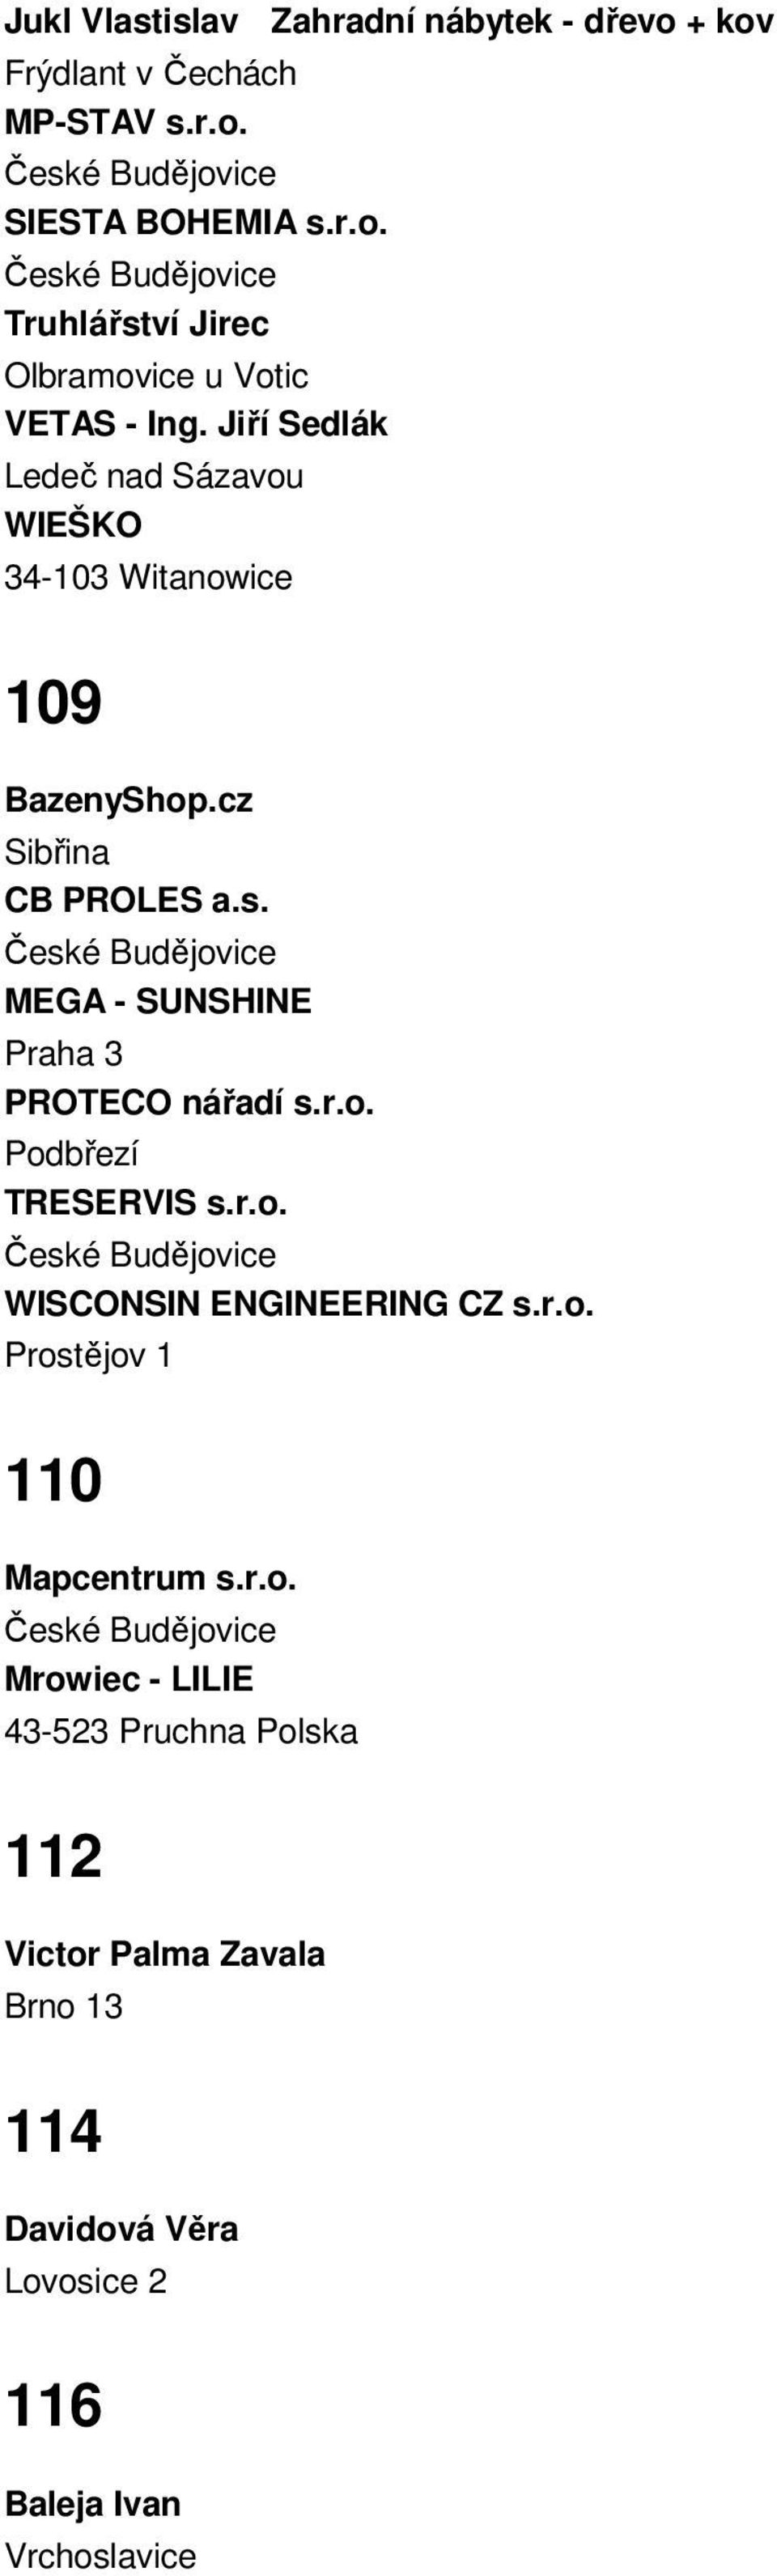 MEGA - SUNSHINE Praha 3 PROTECO nářadí s.r.o. Podbřezí TRESERVIS s.r.o. WISCONSIN ENGINEERING CZ s.r.o. Prostějov 1 110 Mapcentrum s.